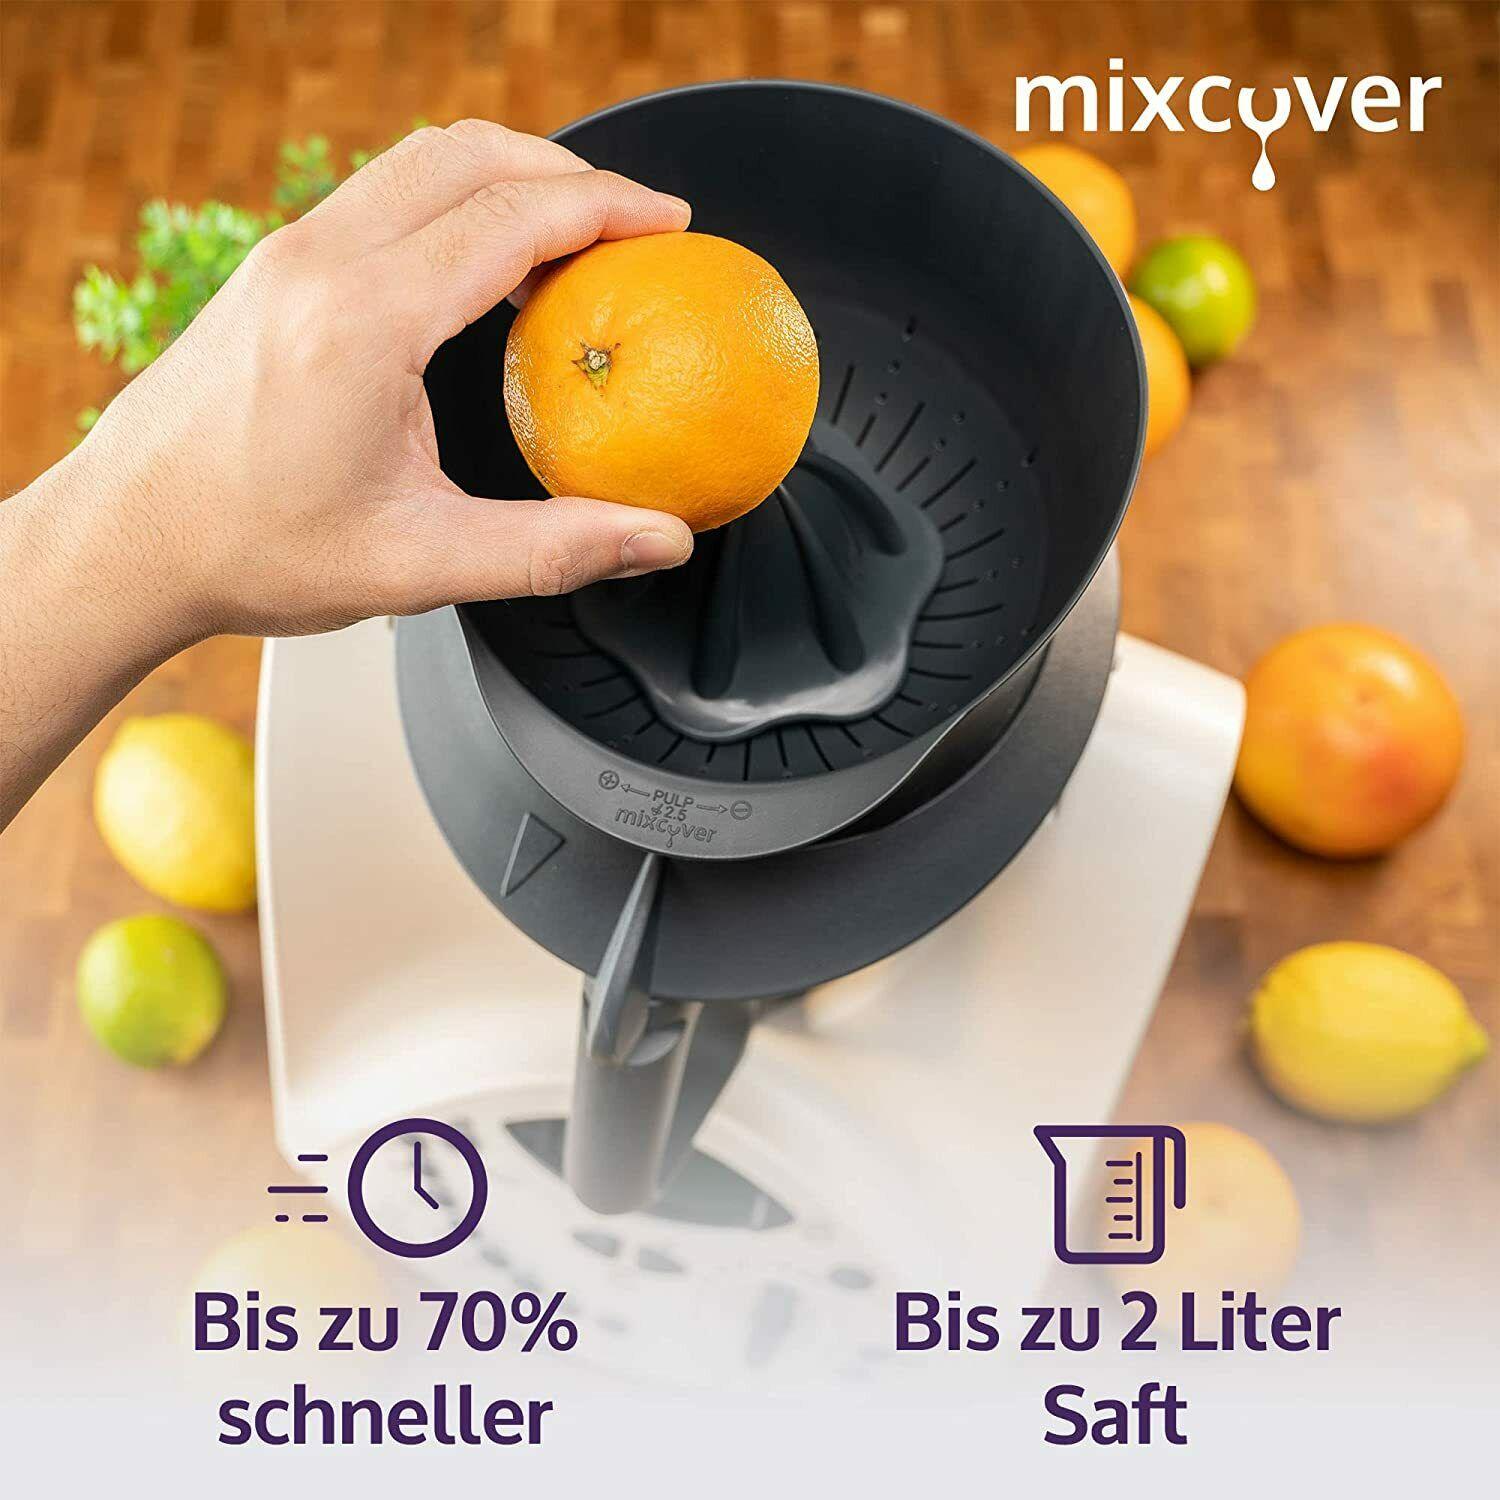 mixcover Juice press/citrus press for Monsieur Cuisine Connect Juicer